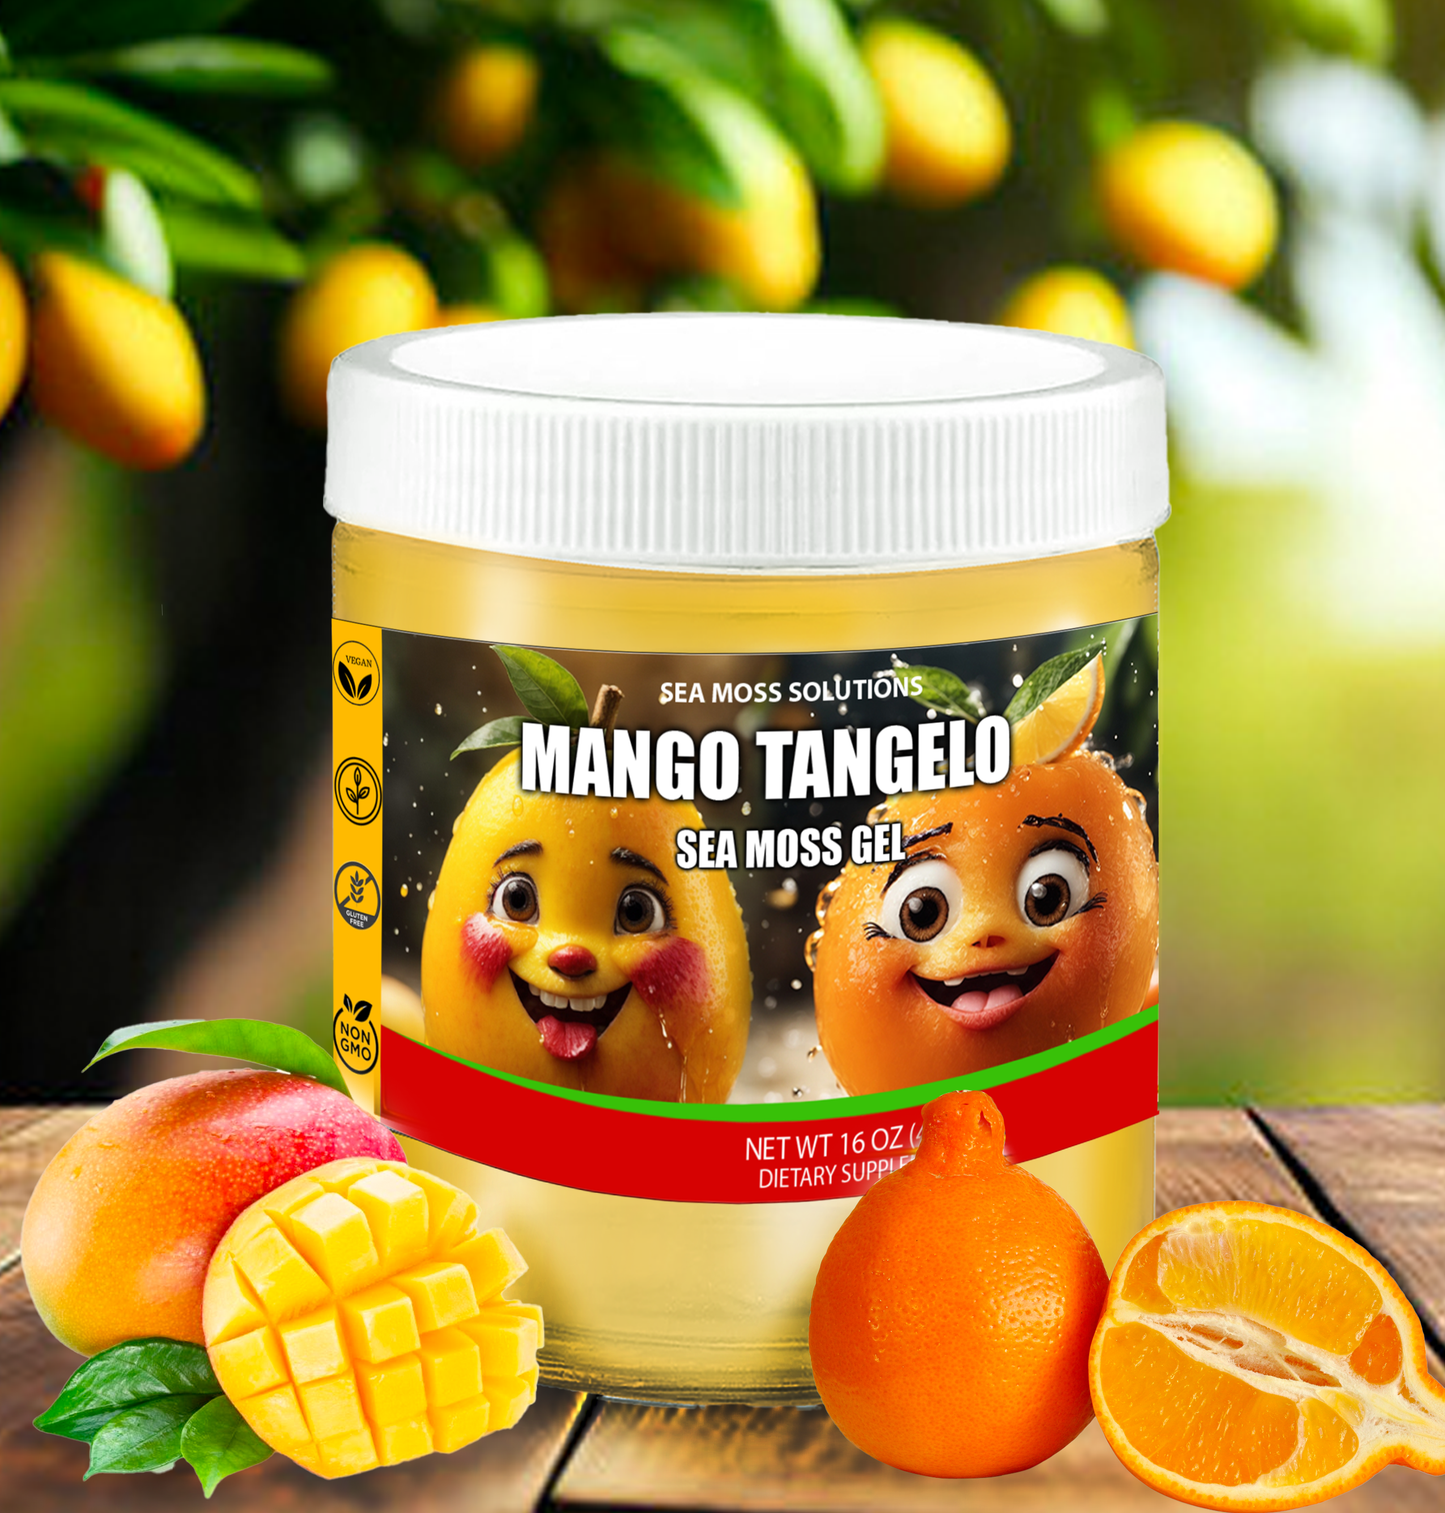 Mango Tangelo Sea Moss Gel